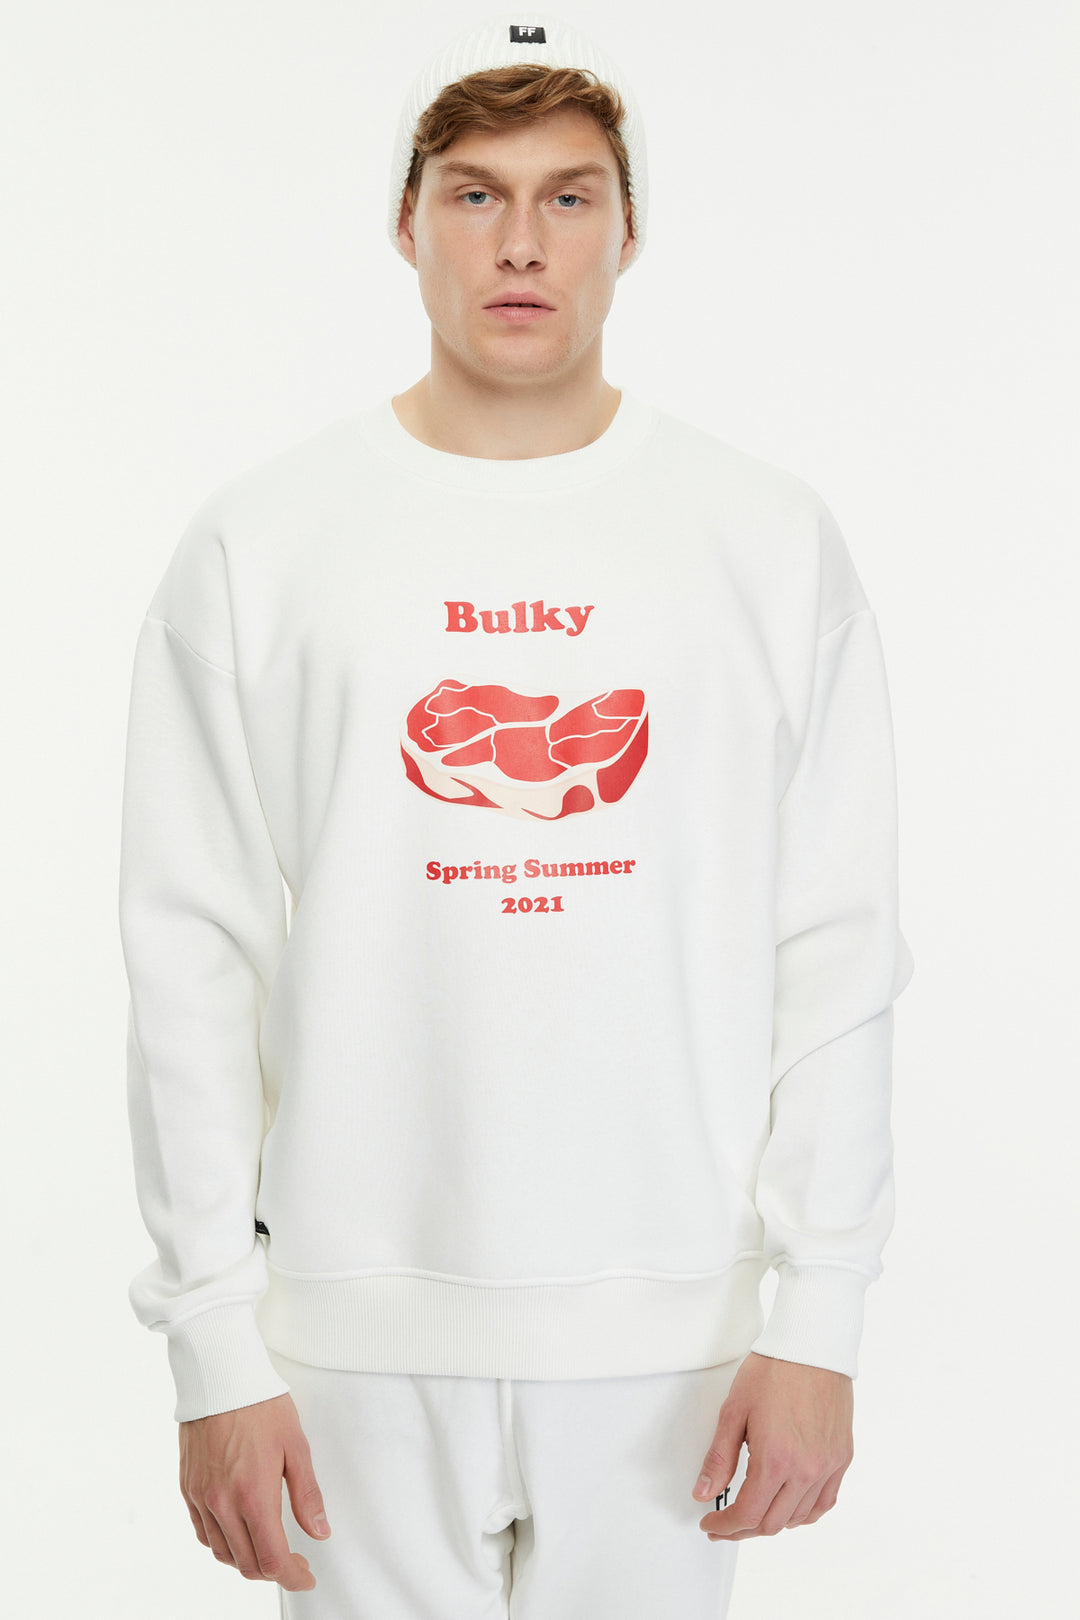 Bulky / Sweatshirt